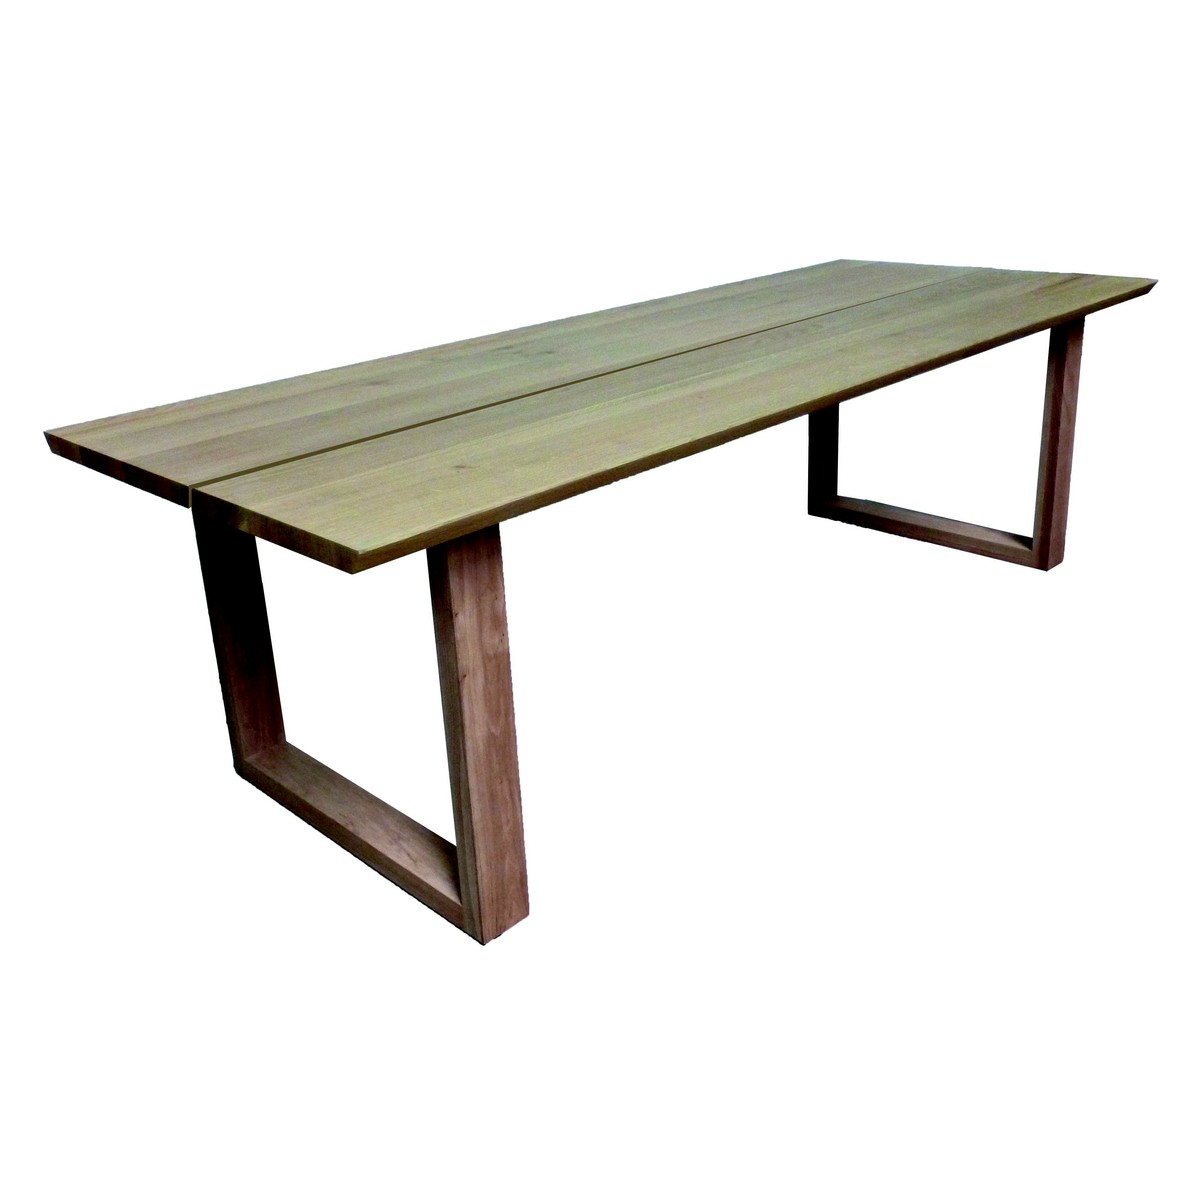   Table haute Paco Seven ouverte rectangulaire  300x100x90cm